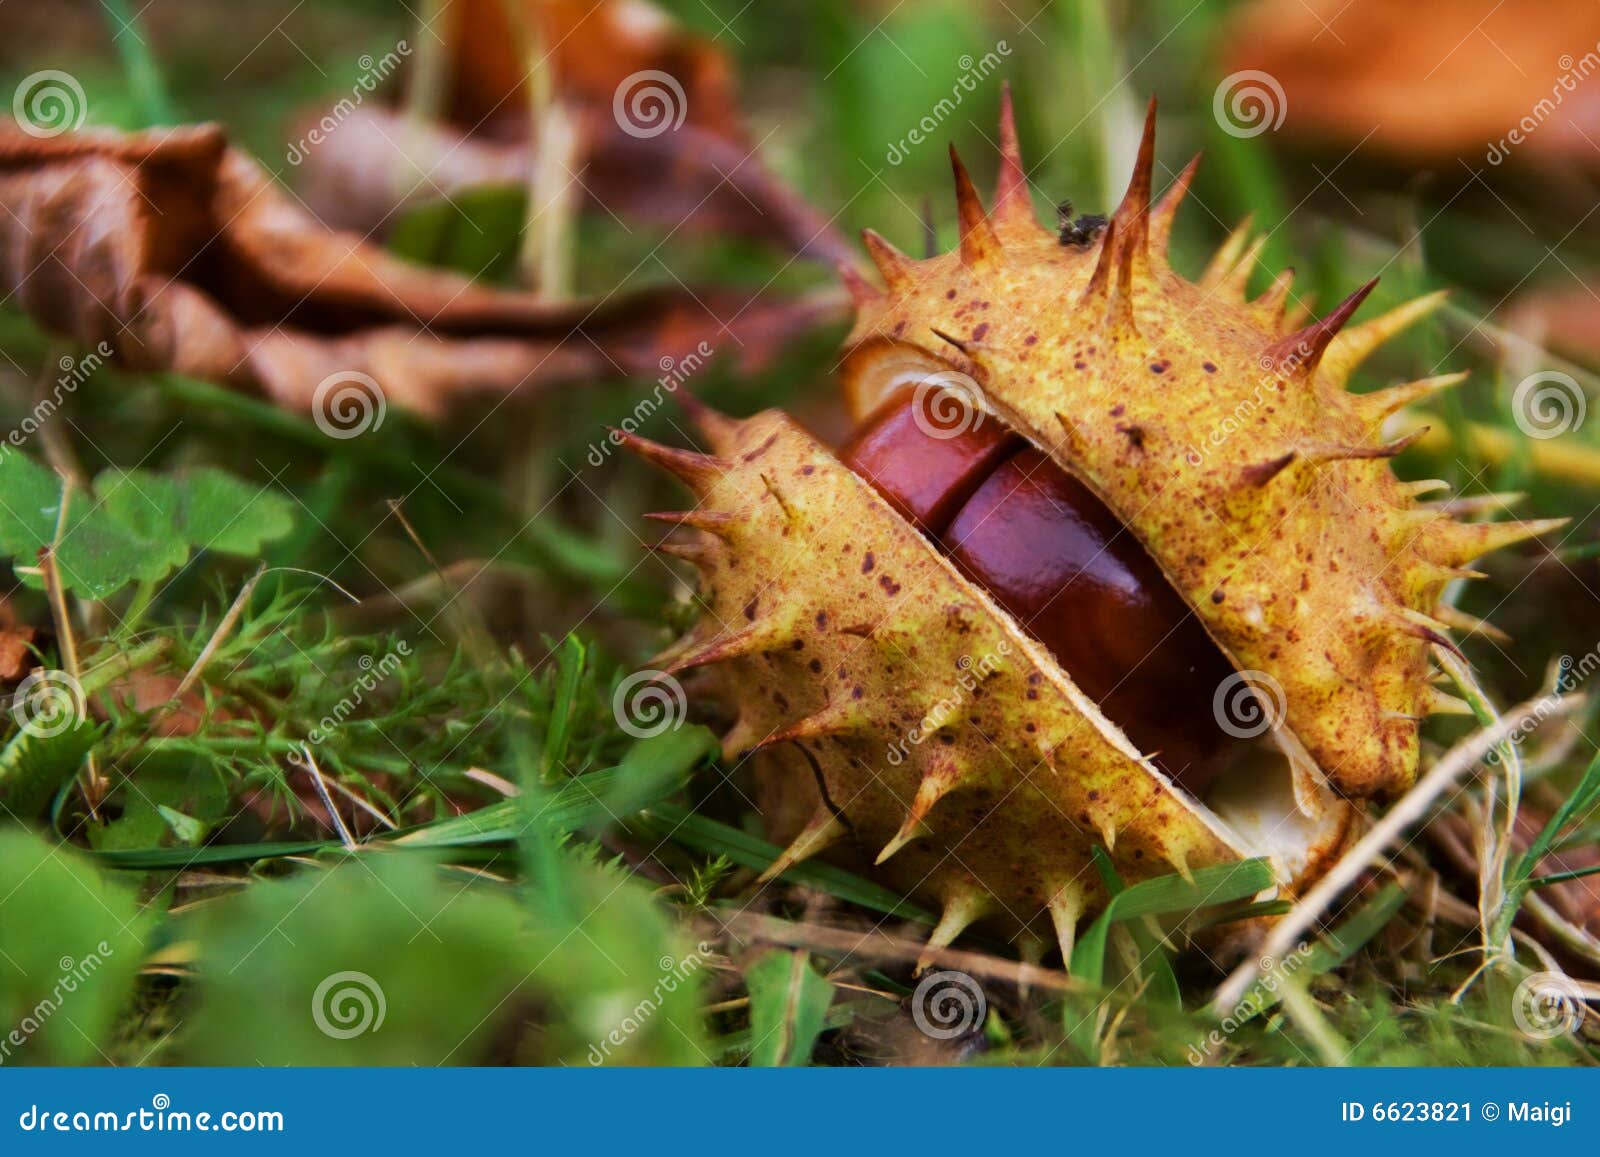 Hose chestnut in shell